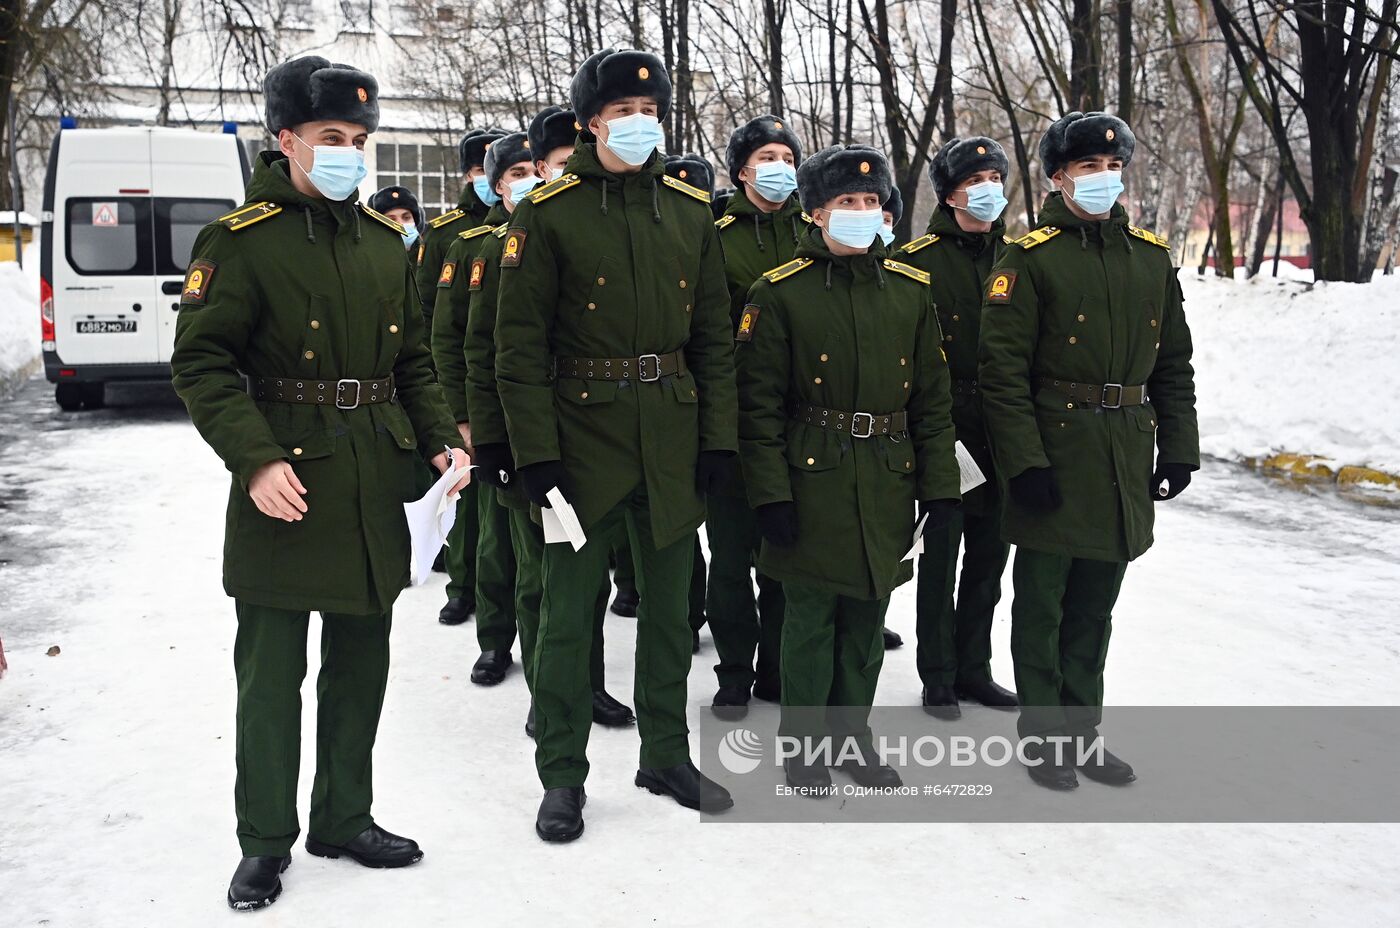 Вакцинация от COVID-19 курсантов Московского высшего общевойскового командного училища